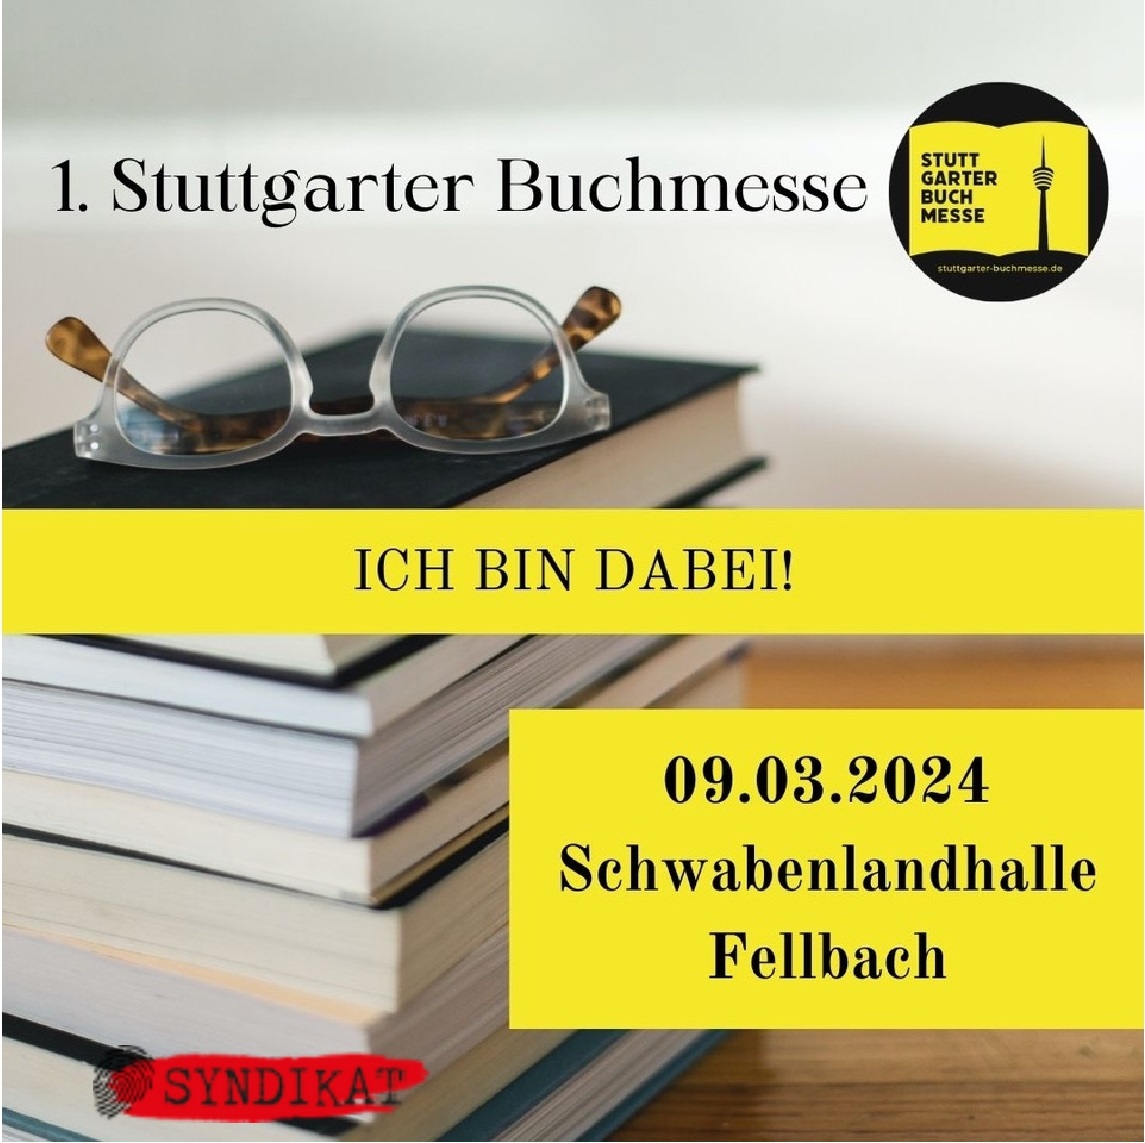 Syndikat bei der Buchmesse Stuttgart 09.03. 10-18 Uhr in Schwabenlandhalle Fellbach